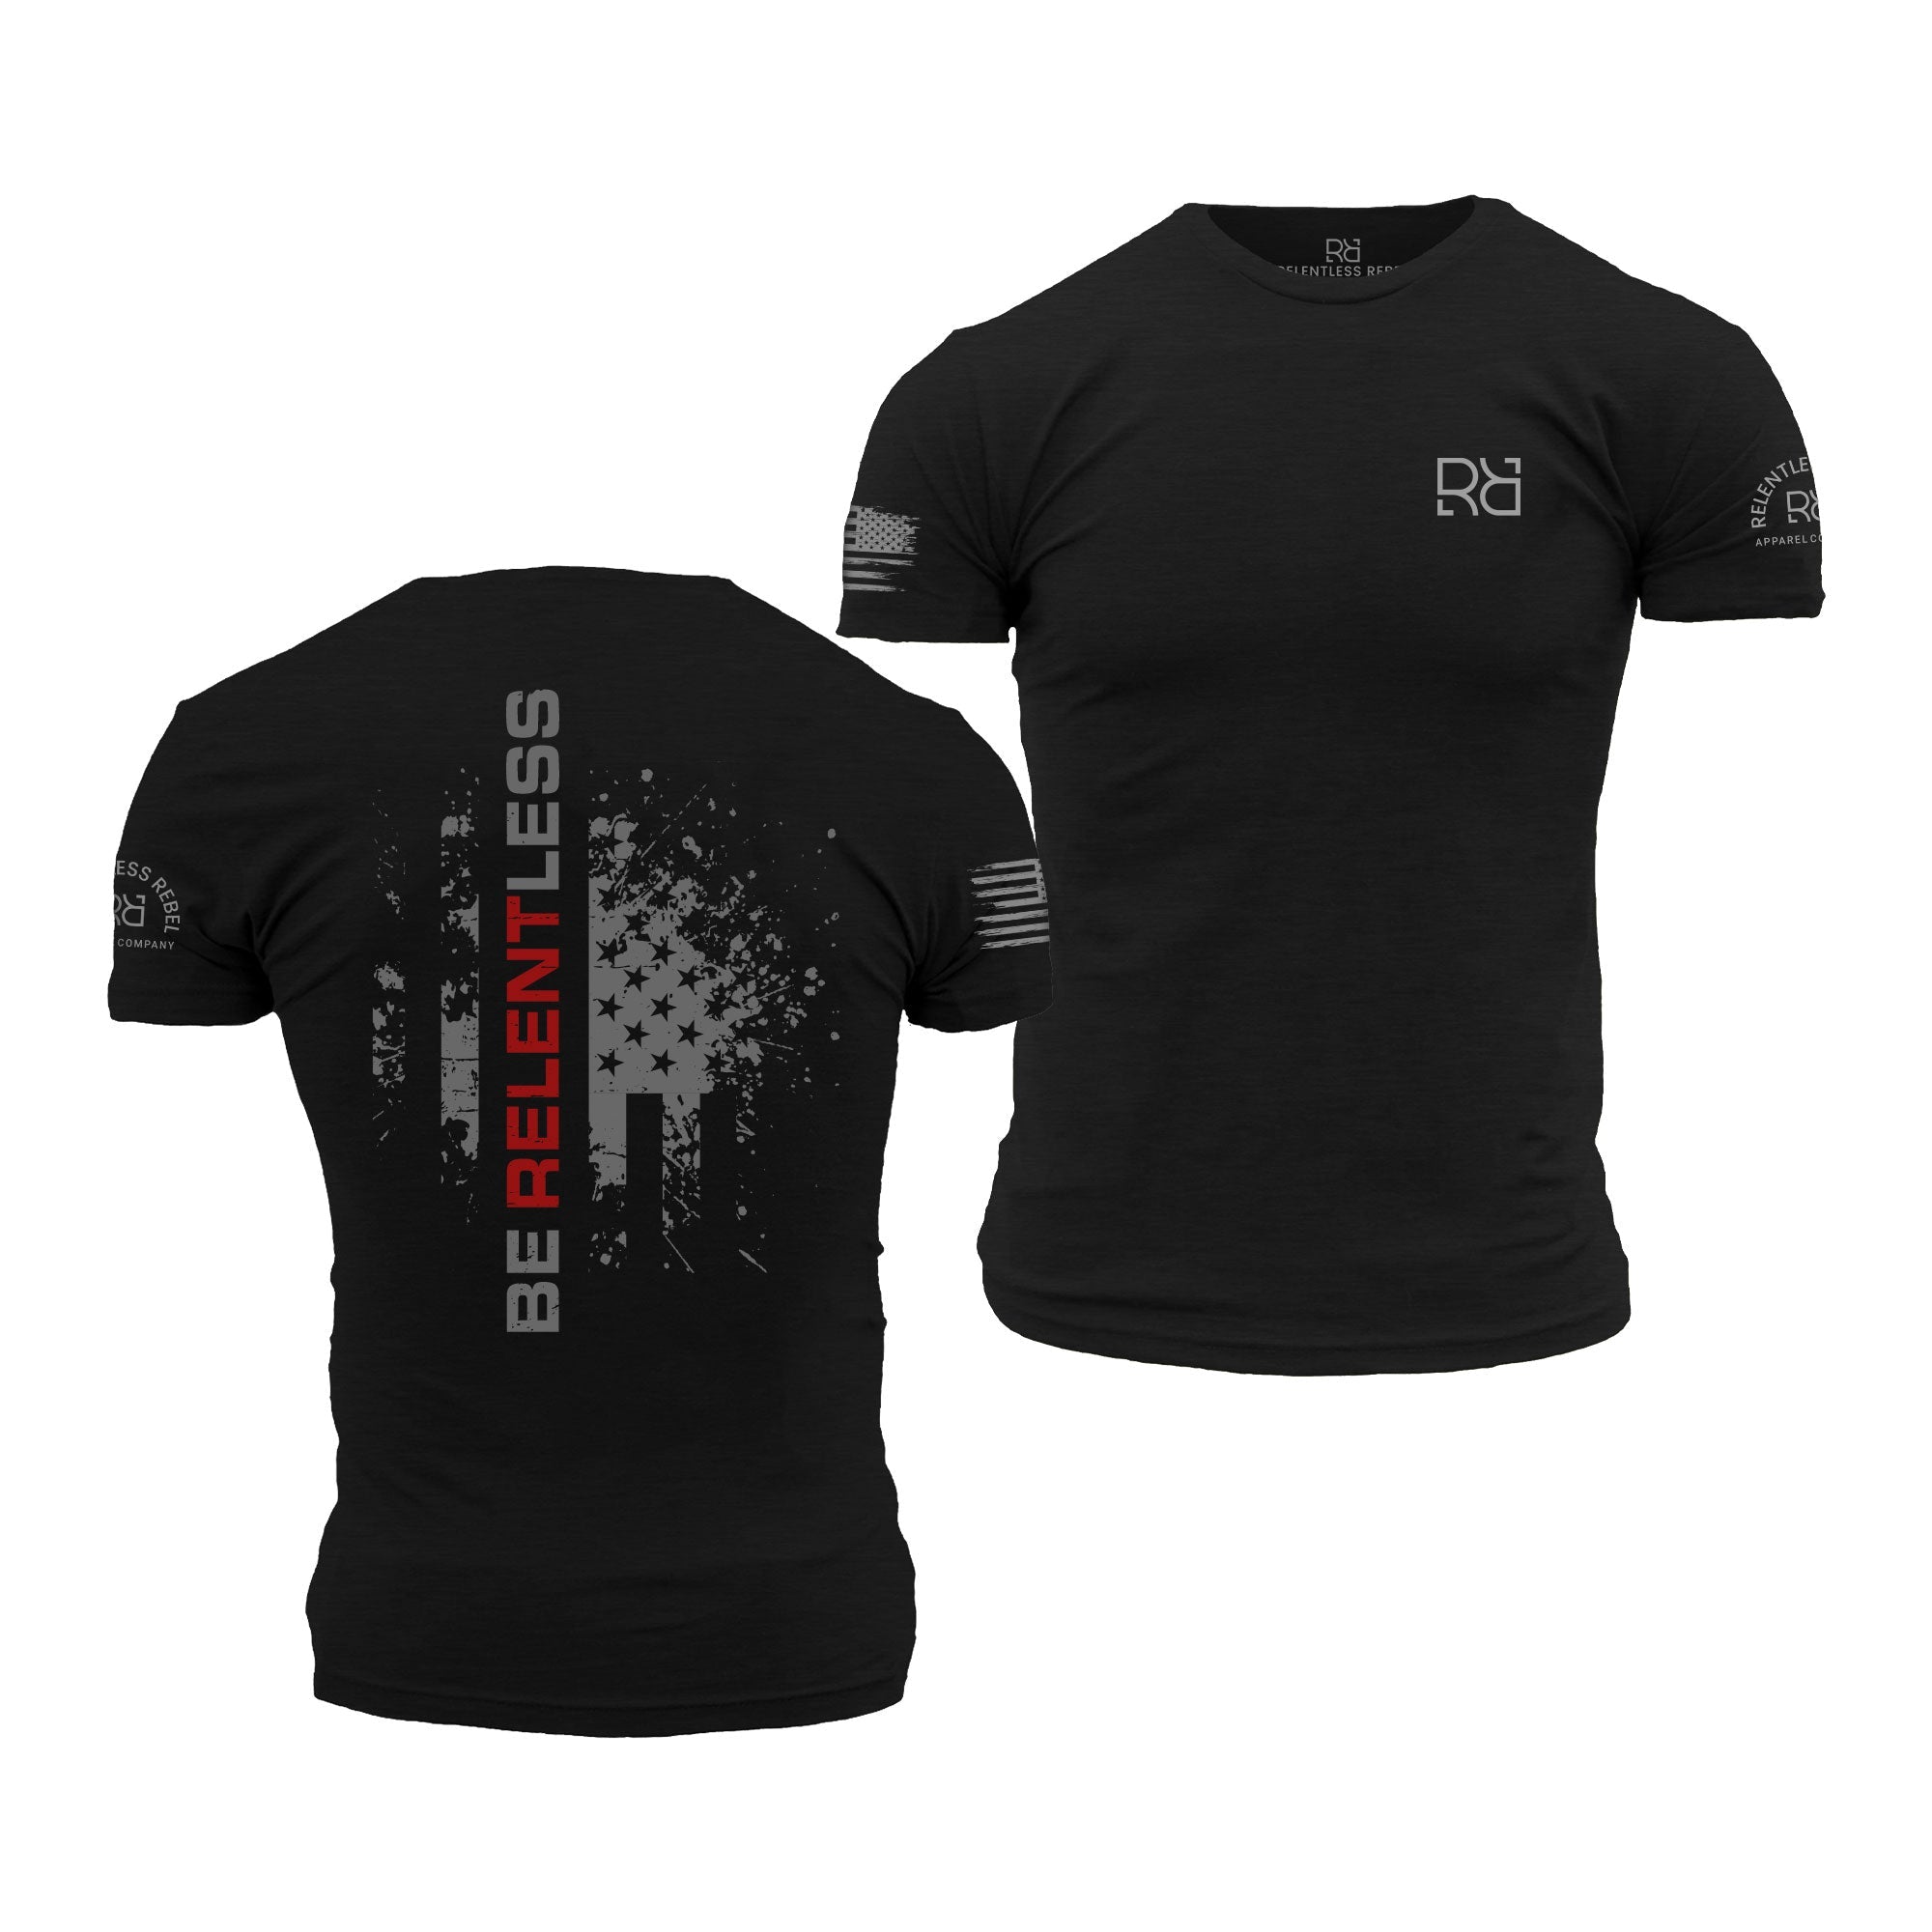 Relentless Rebel's Be Relentless back design t-shirt